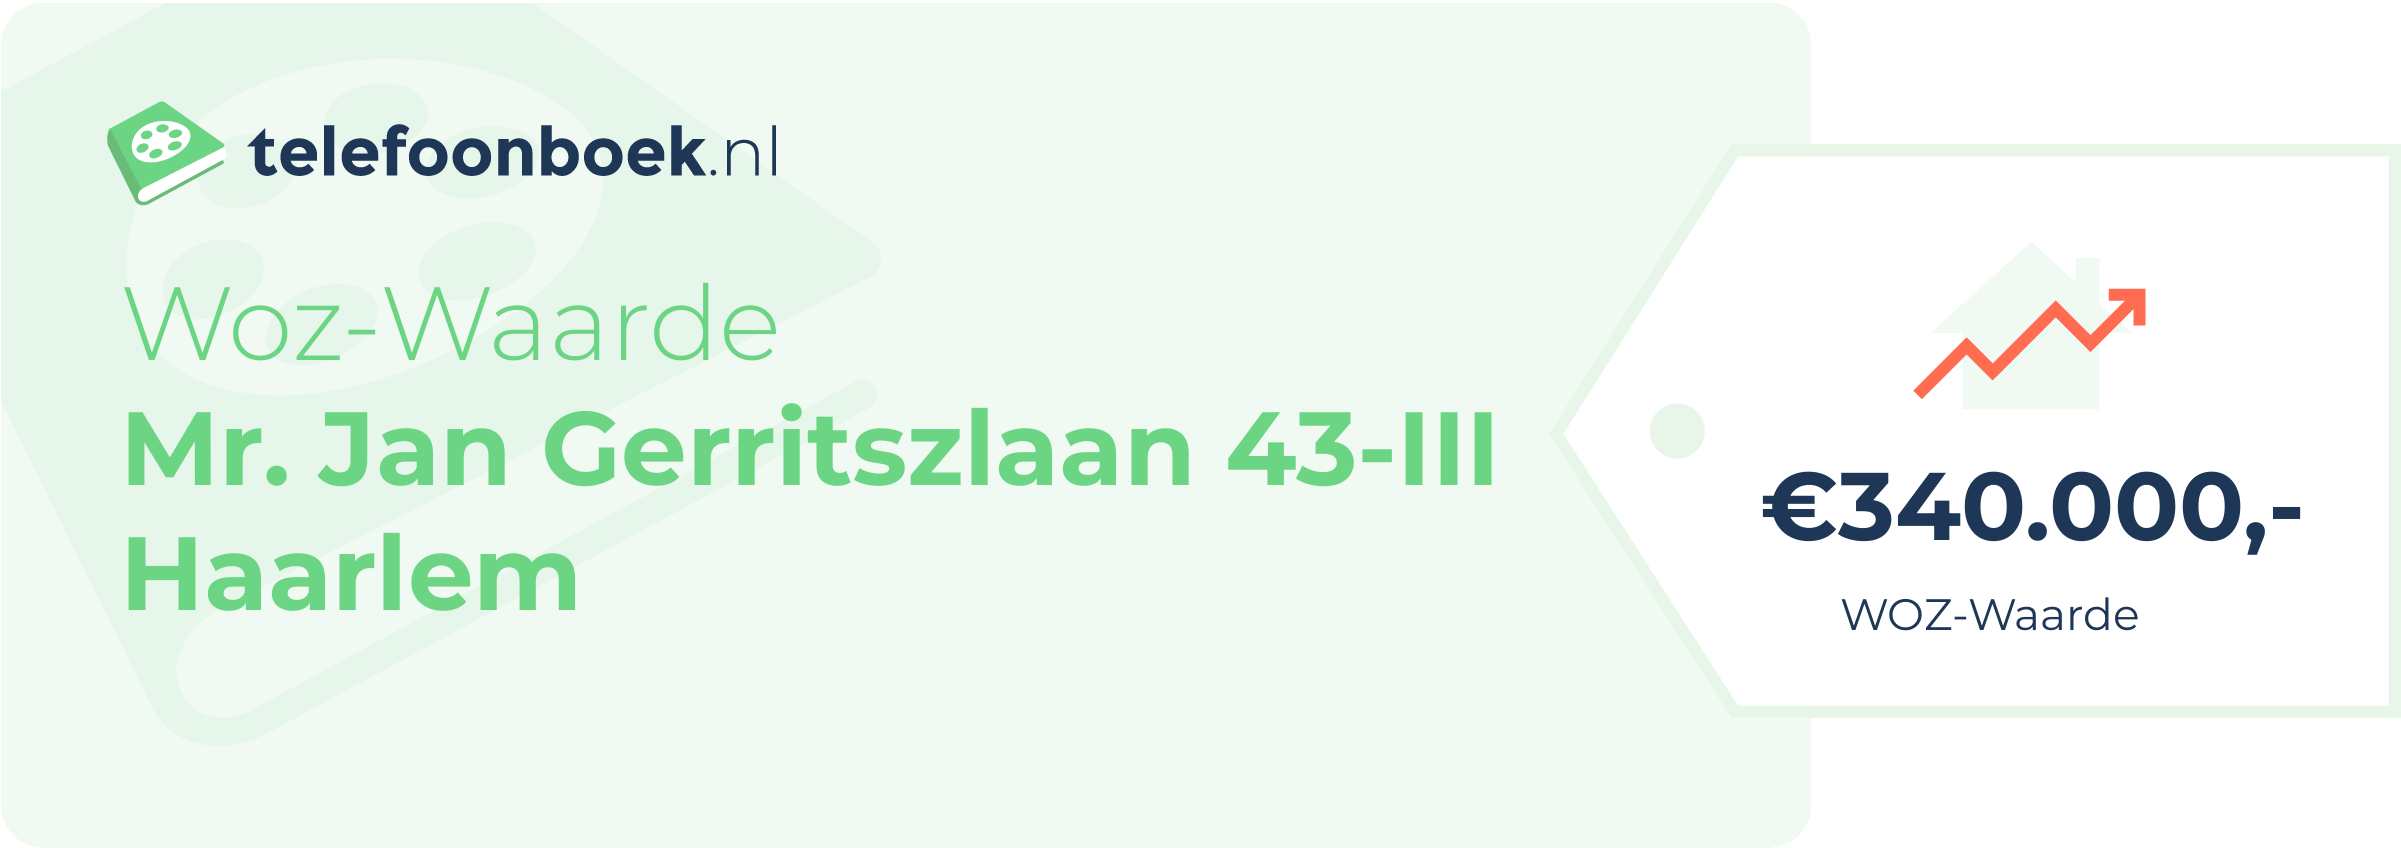 WOZ-waarde Mr. Jan Gerritszlaan 43-III Haarlem